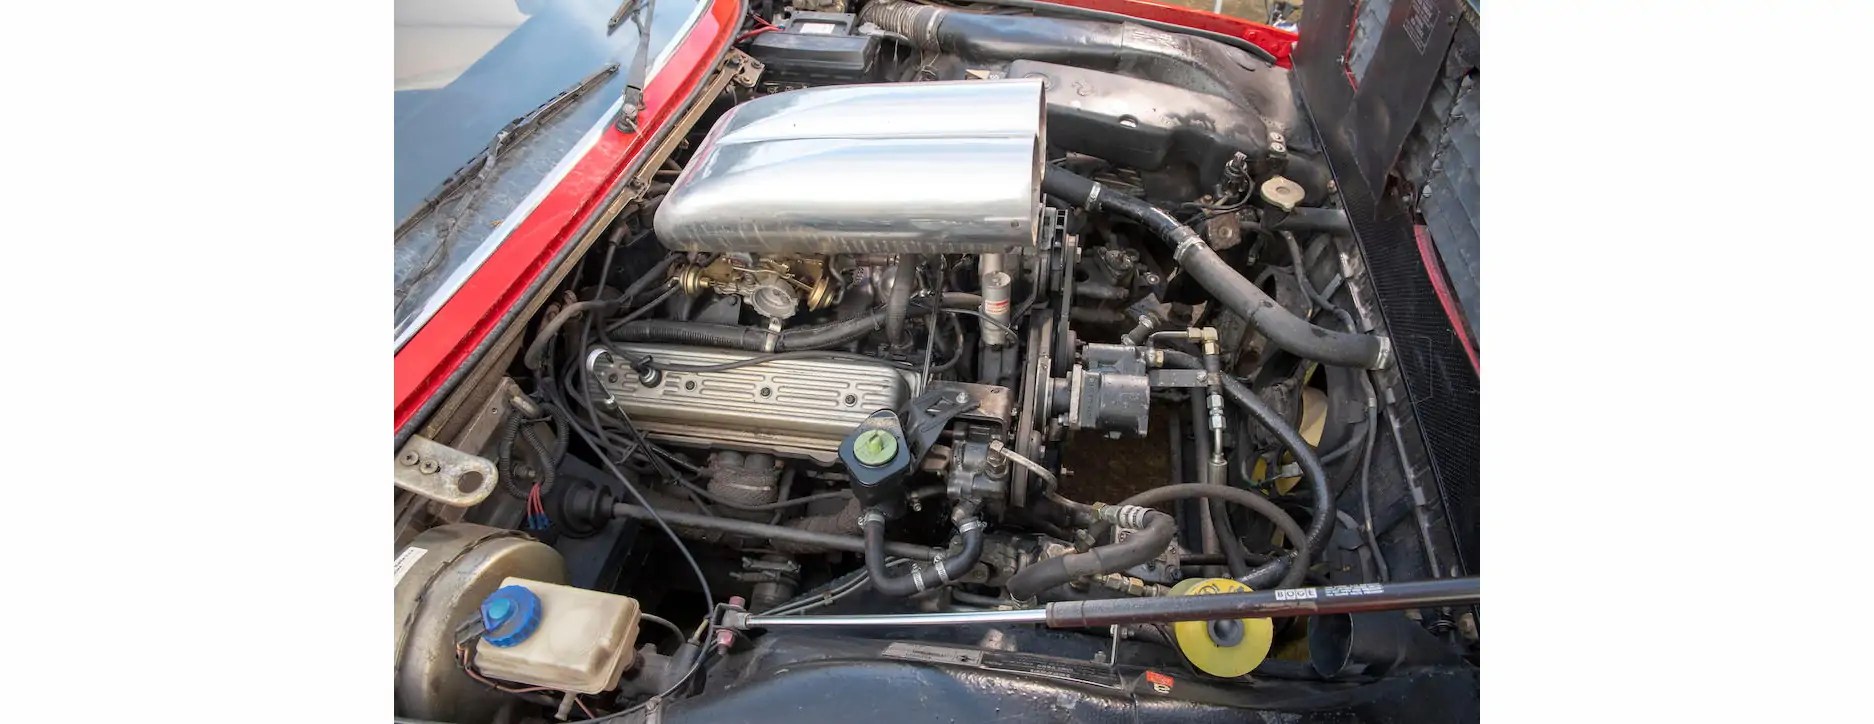 صدق أو لاتصدق فيراري بيك اب  بمحرك Chevy V8